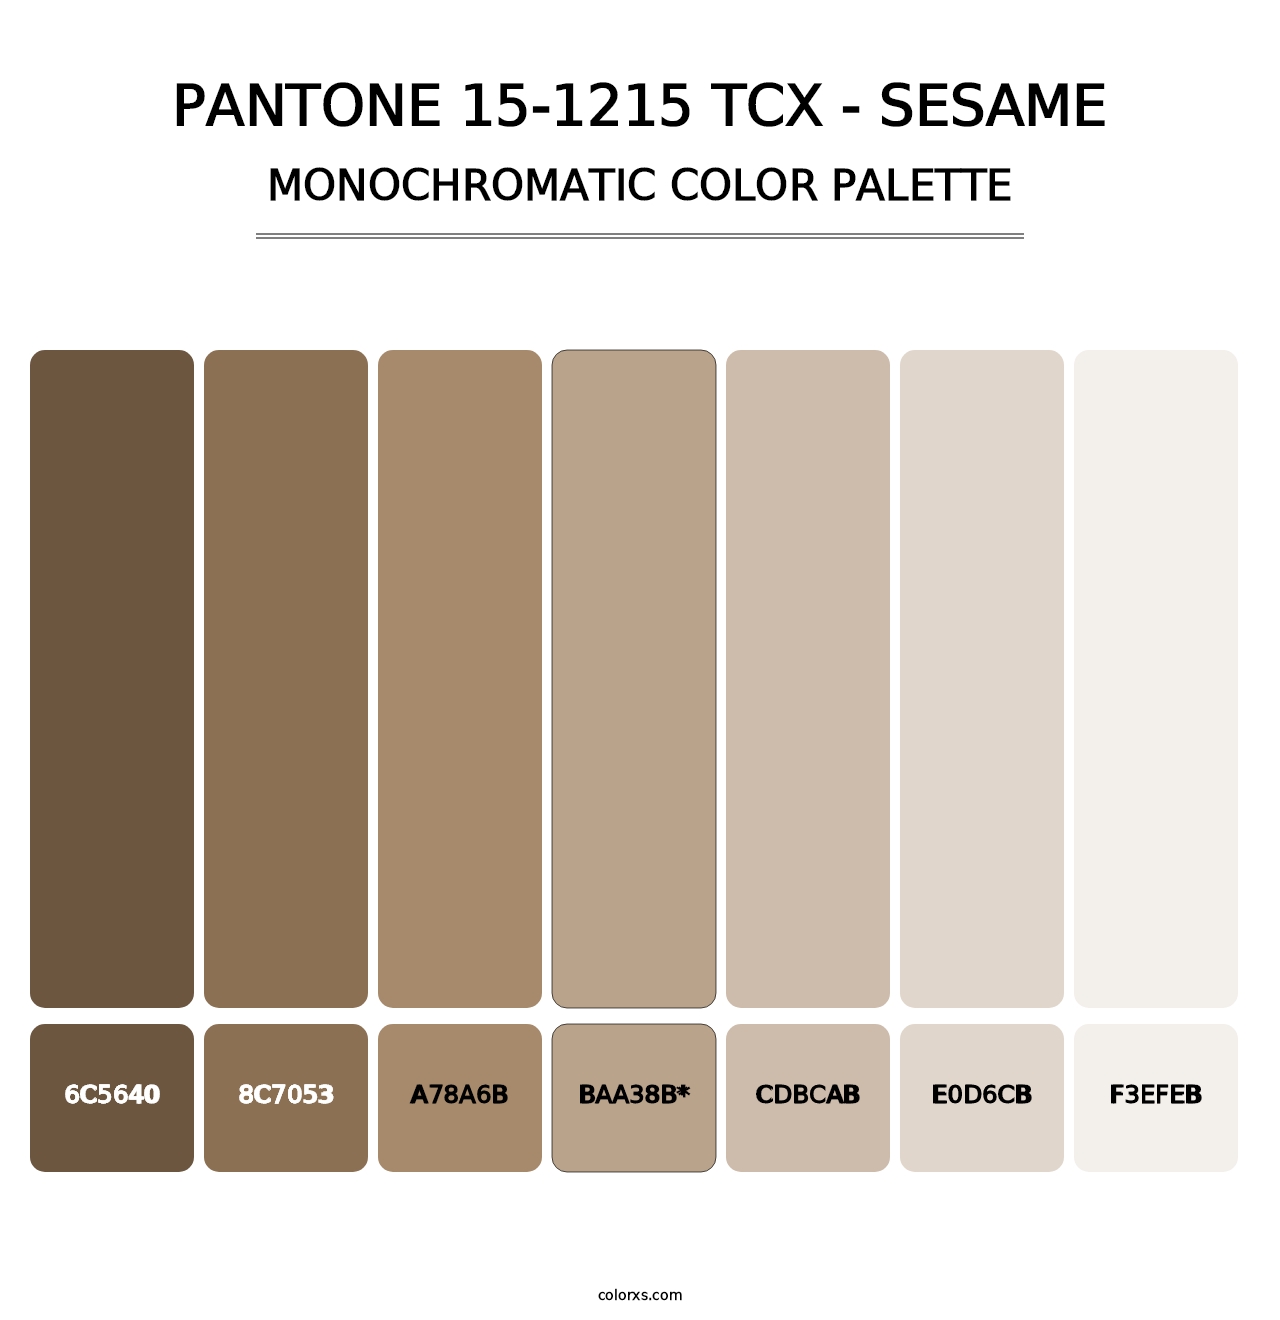 PANTONE 15-1215 TCX - Sesame - Monochromatic Color Palette